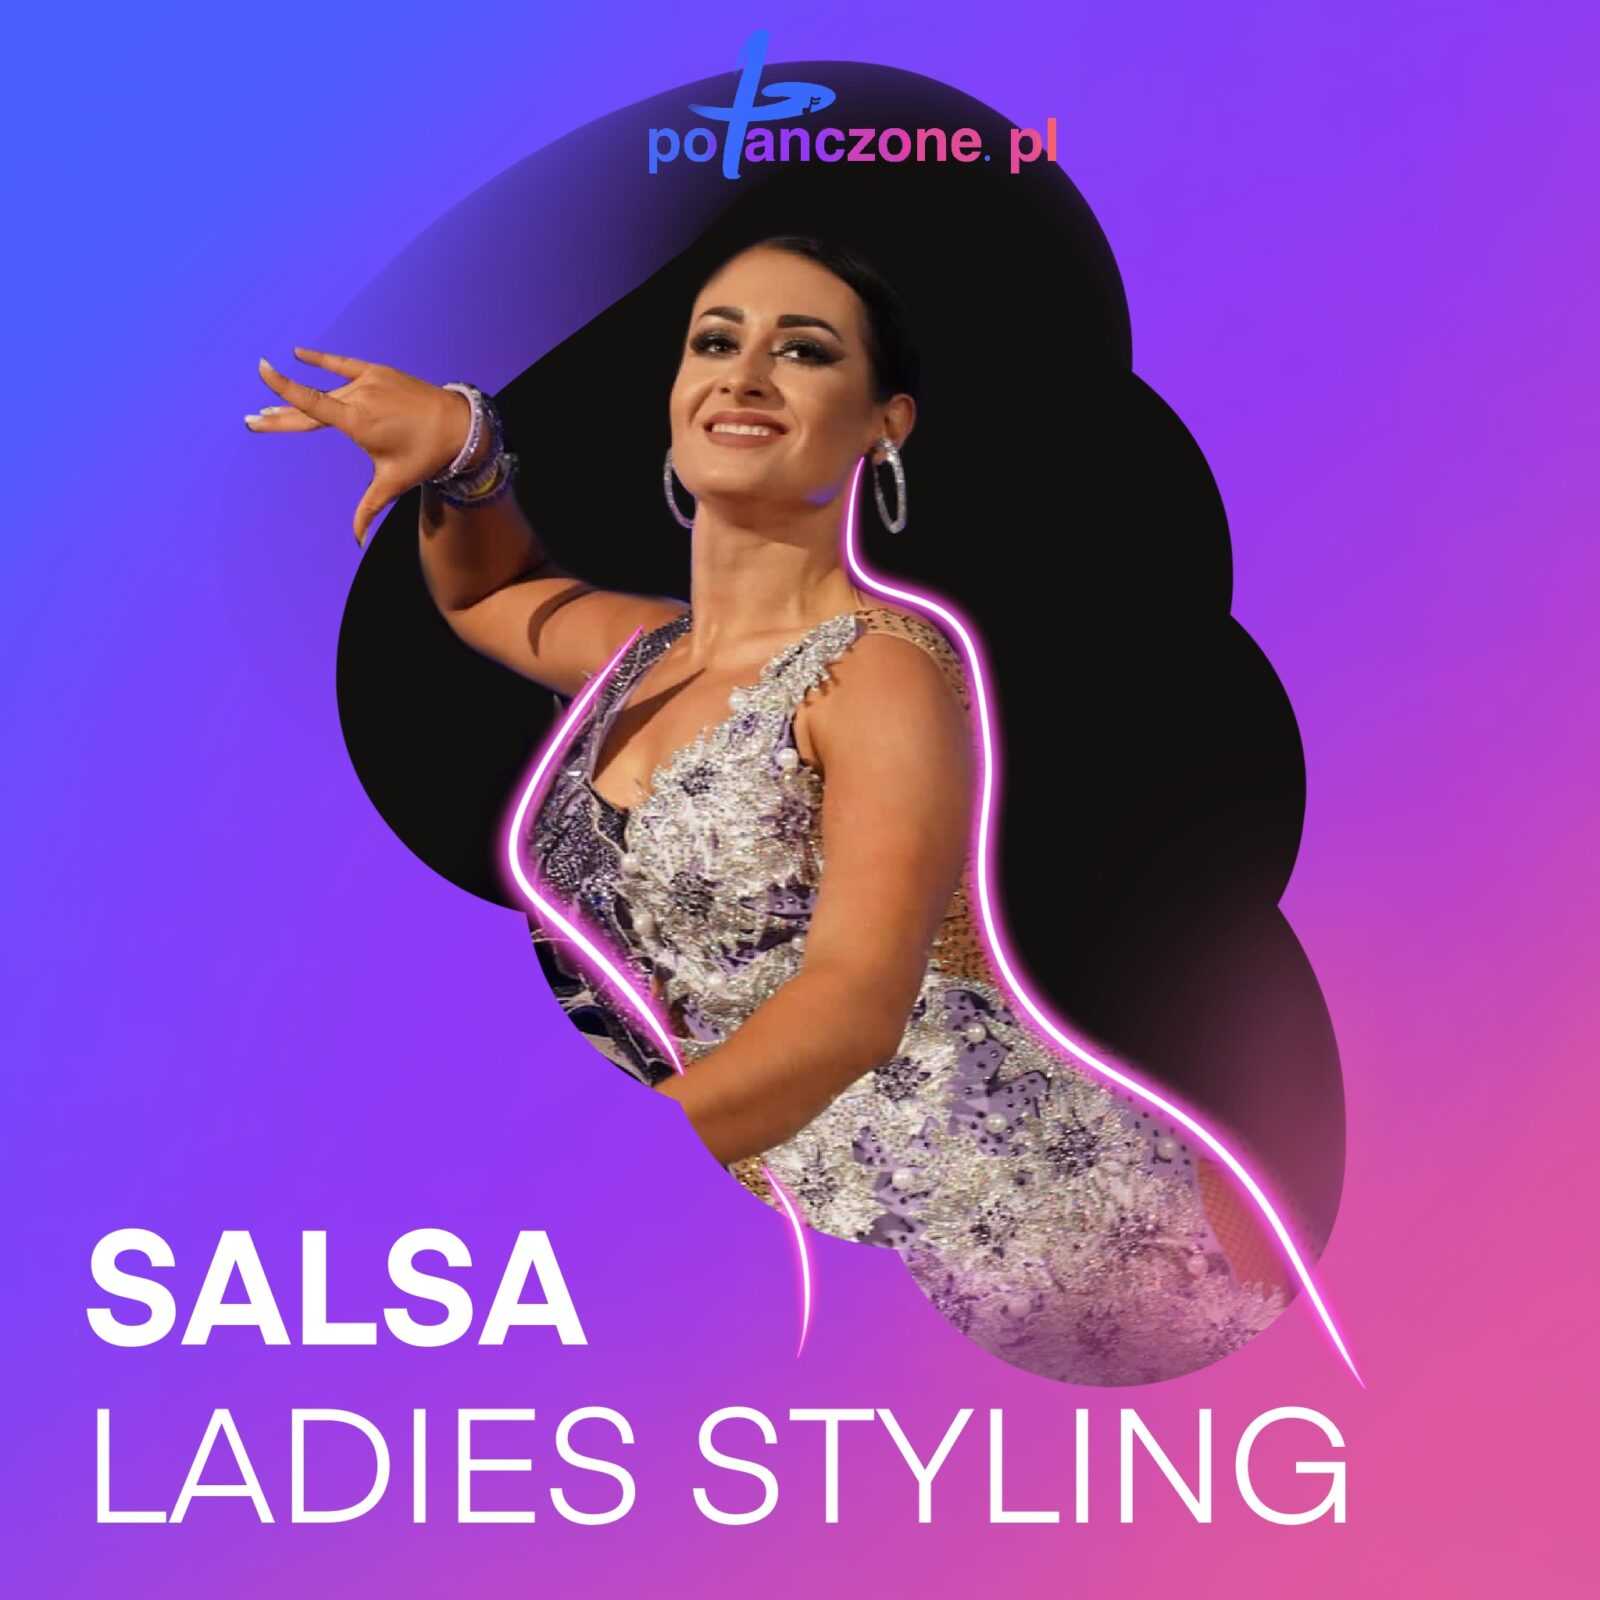 Salsa Ladies Styling – Klaudia Kundera